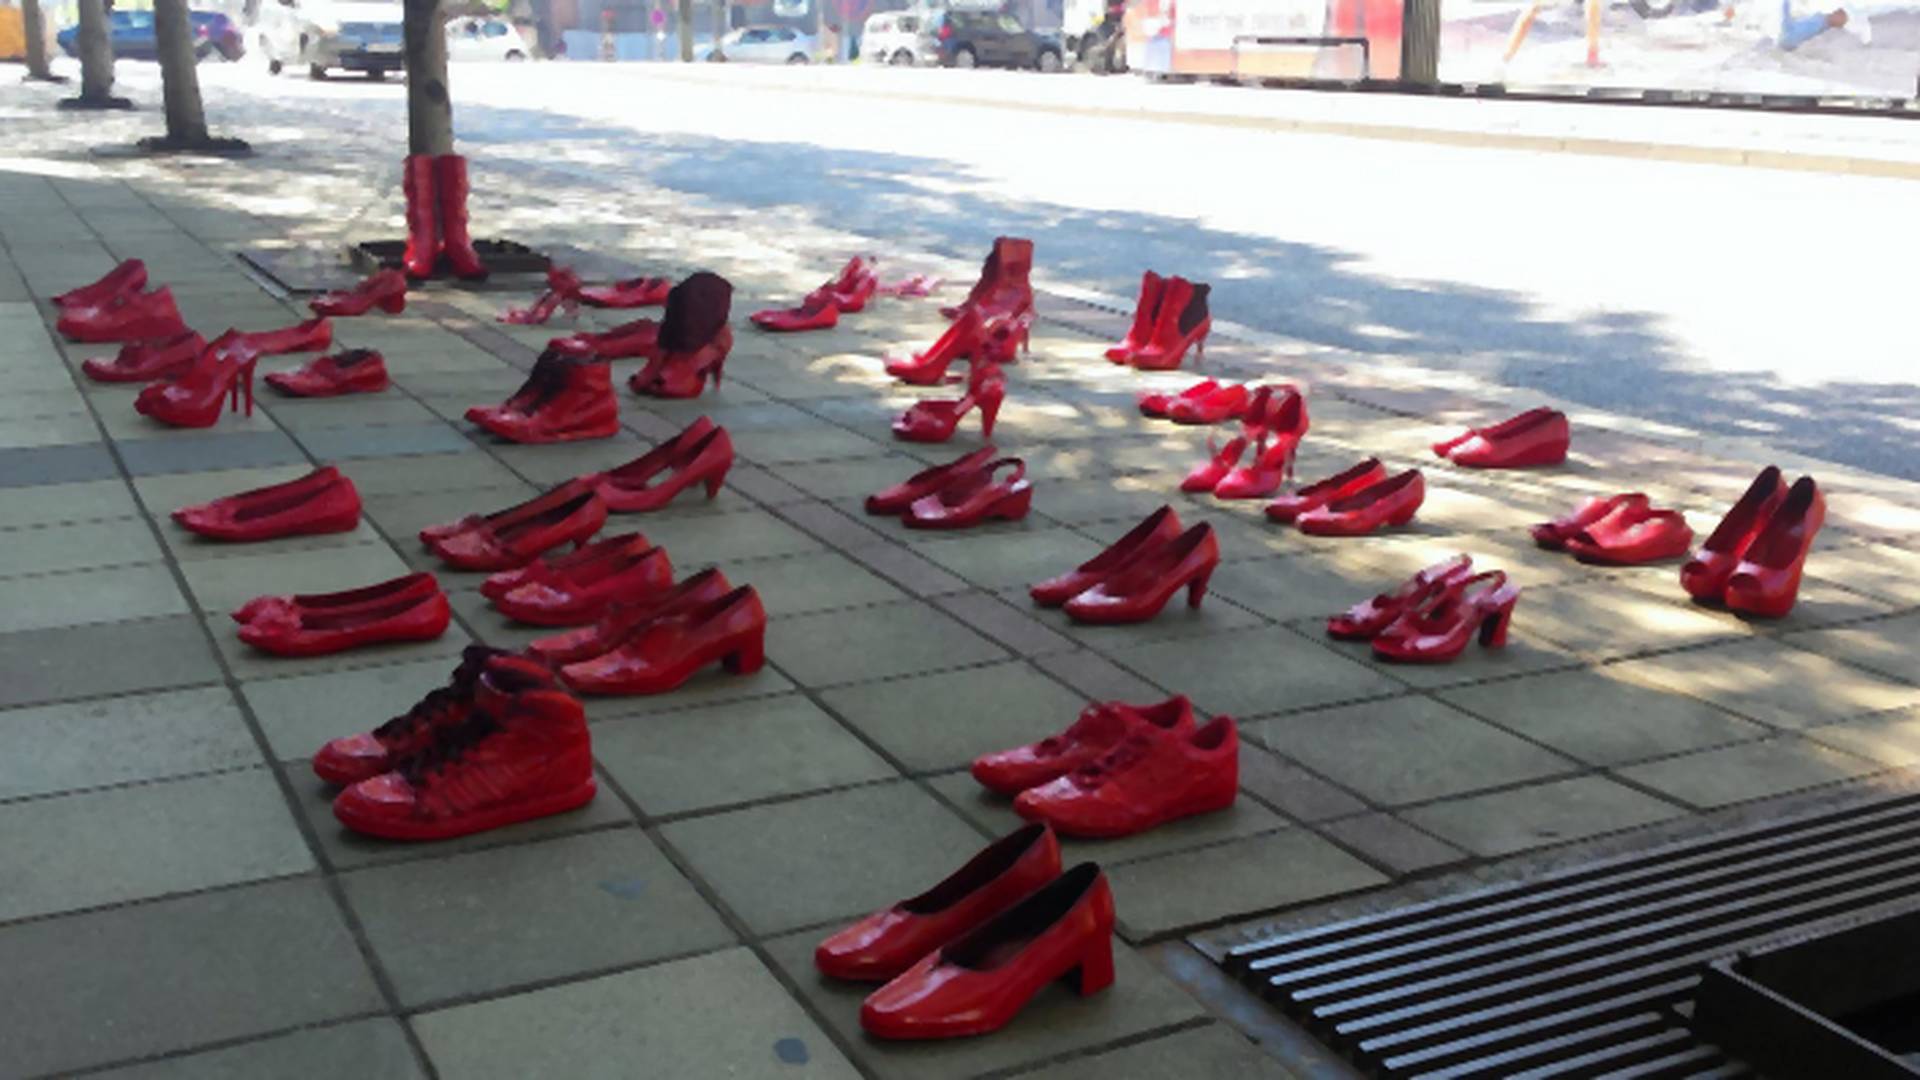 Crvene cipele simbol su naše najveće tragedije